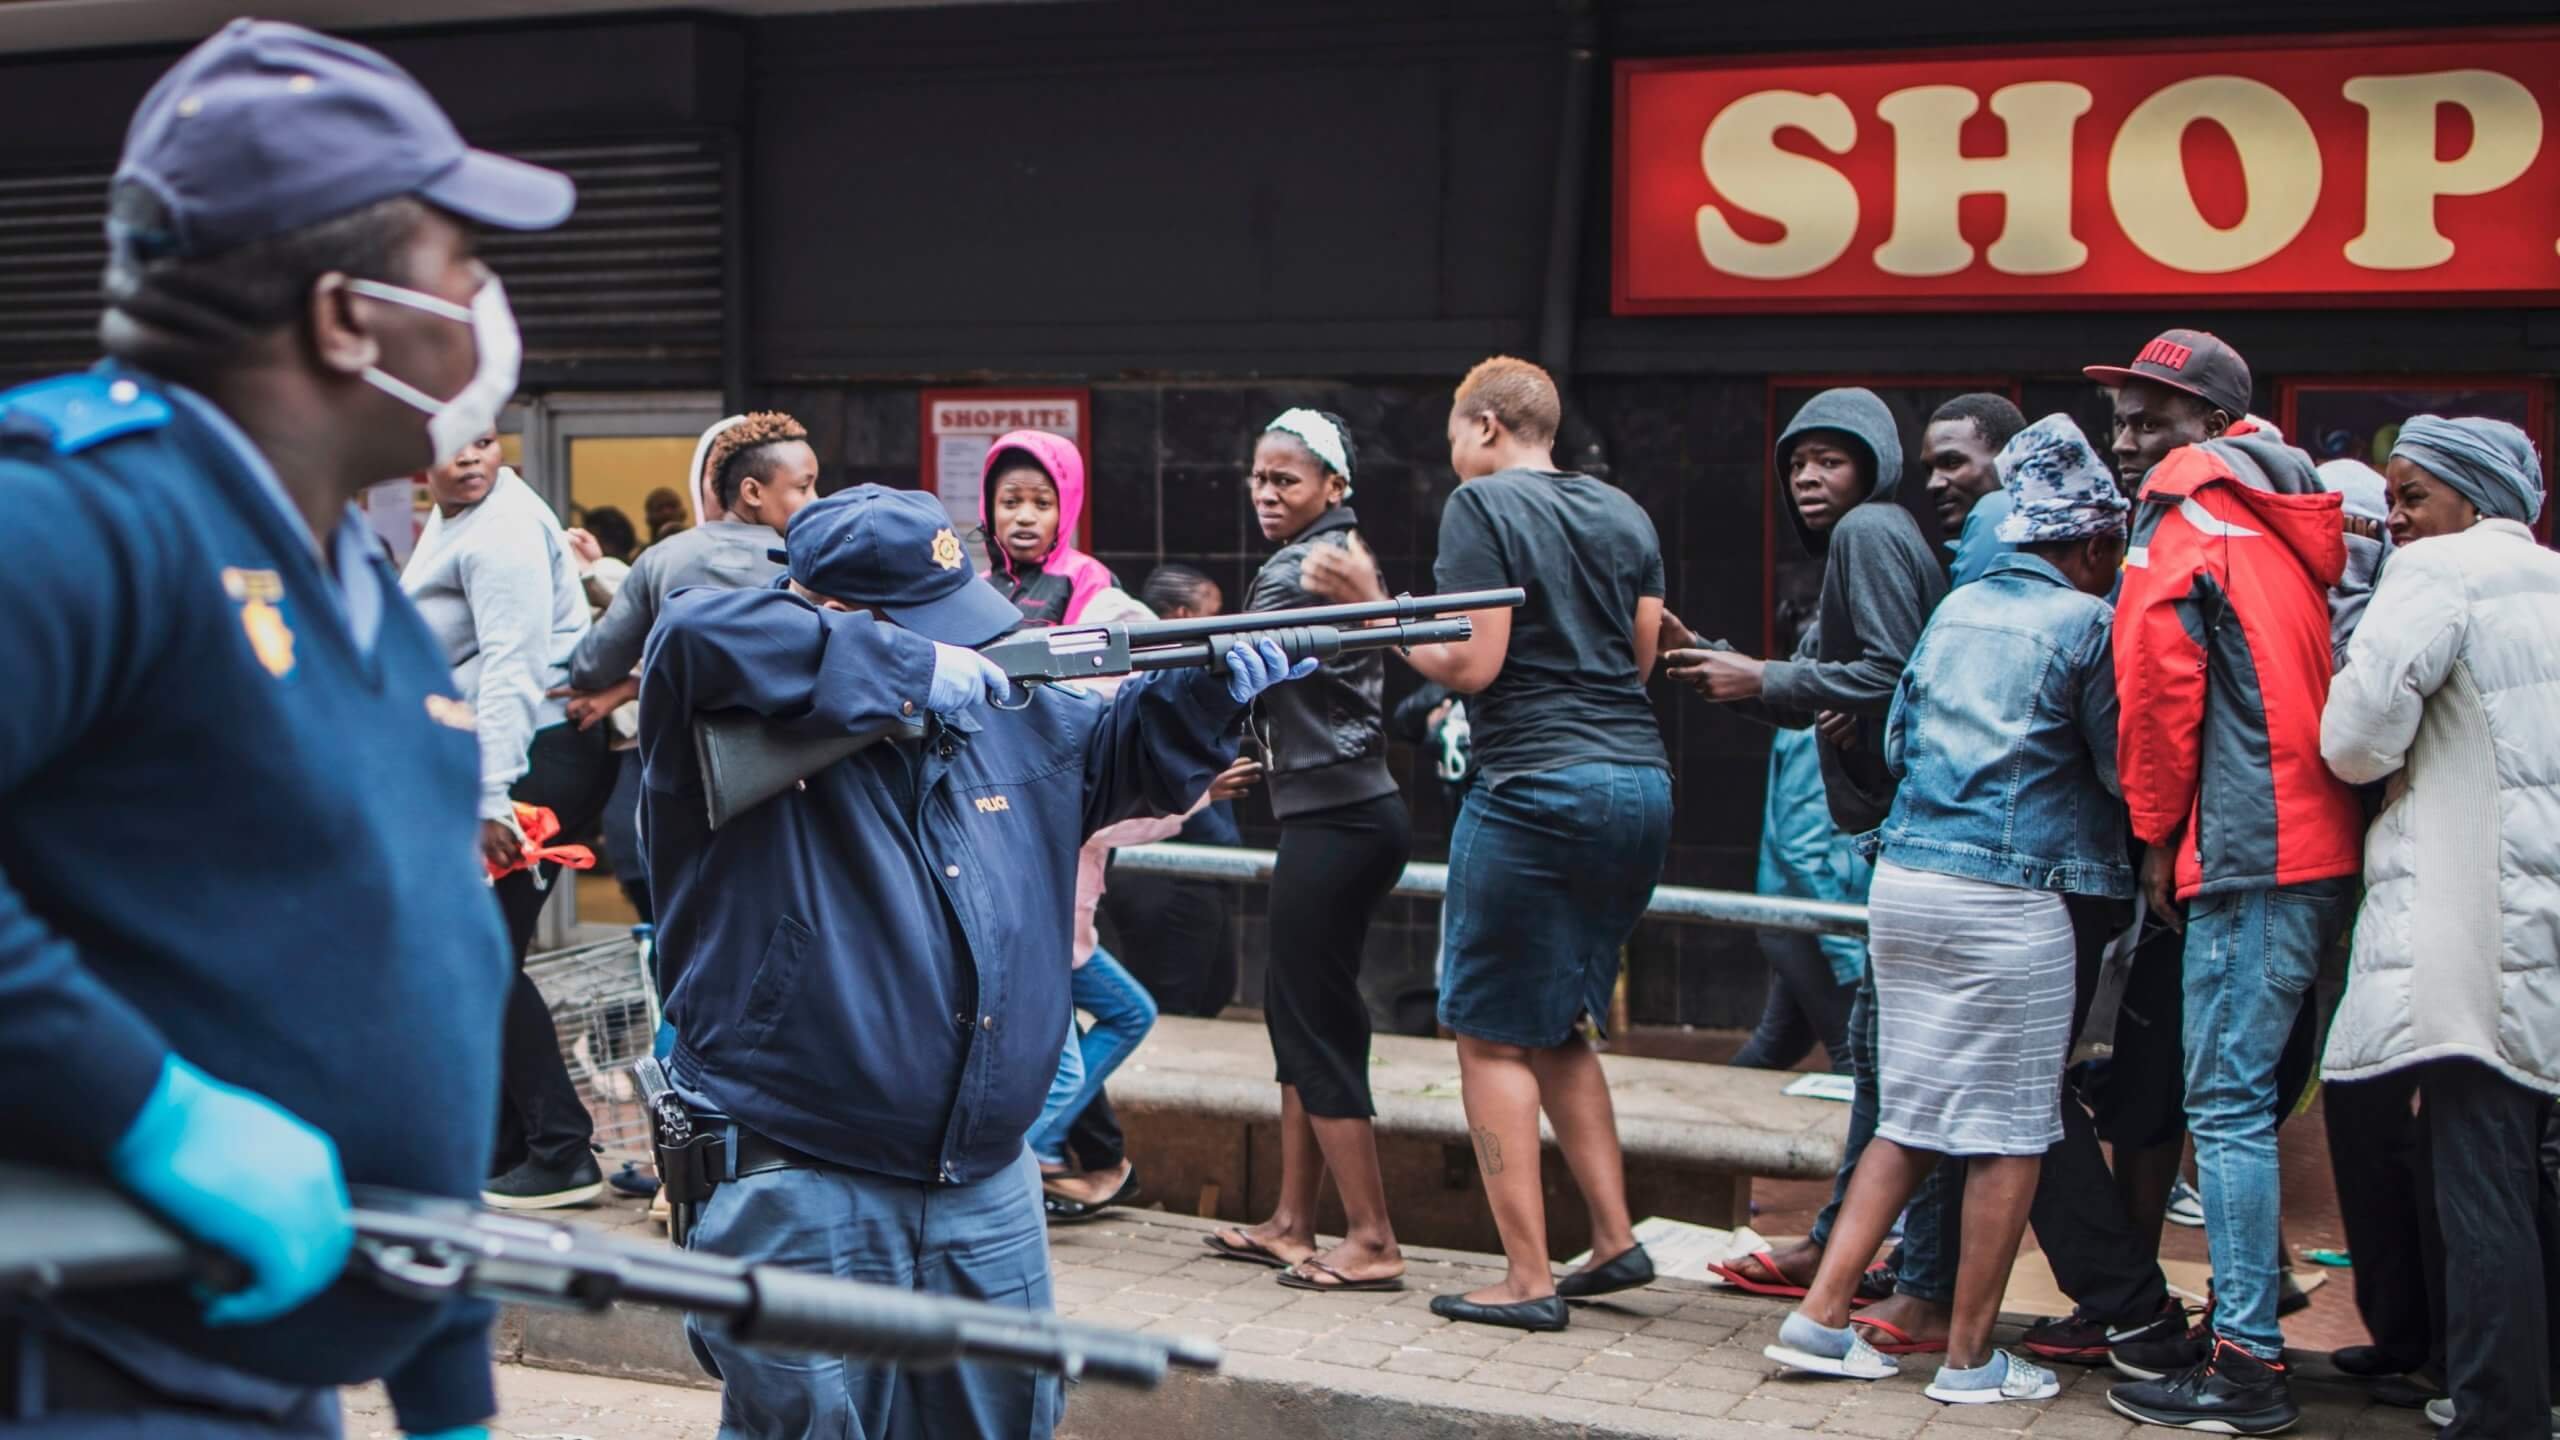 TOPSHOT - Un policier sud-africain pointe son fusil à pompe pour disperser une foule d'acheteurs à Yeoville, Johannesburg, le 28 mars 2020, alors qu'il tente de faire respecter une distance de sécurité à l'extérieur d'un supermarché dans l'inquiétude de la propagation du coronavirus COVID-19. - Le 27 mars 2020, l'Afrique du Sud s'est retrouvée sous le coup d'un embargo national, rejoignant ainsi d'autres pays africains qui ont imposé des couvre-feux et des fermetures strictes pour tenter de stopper la propagation du coronavirus COVID-19 sur le continent.